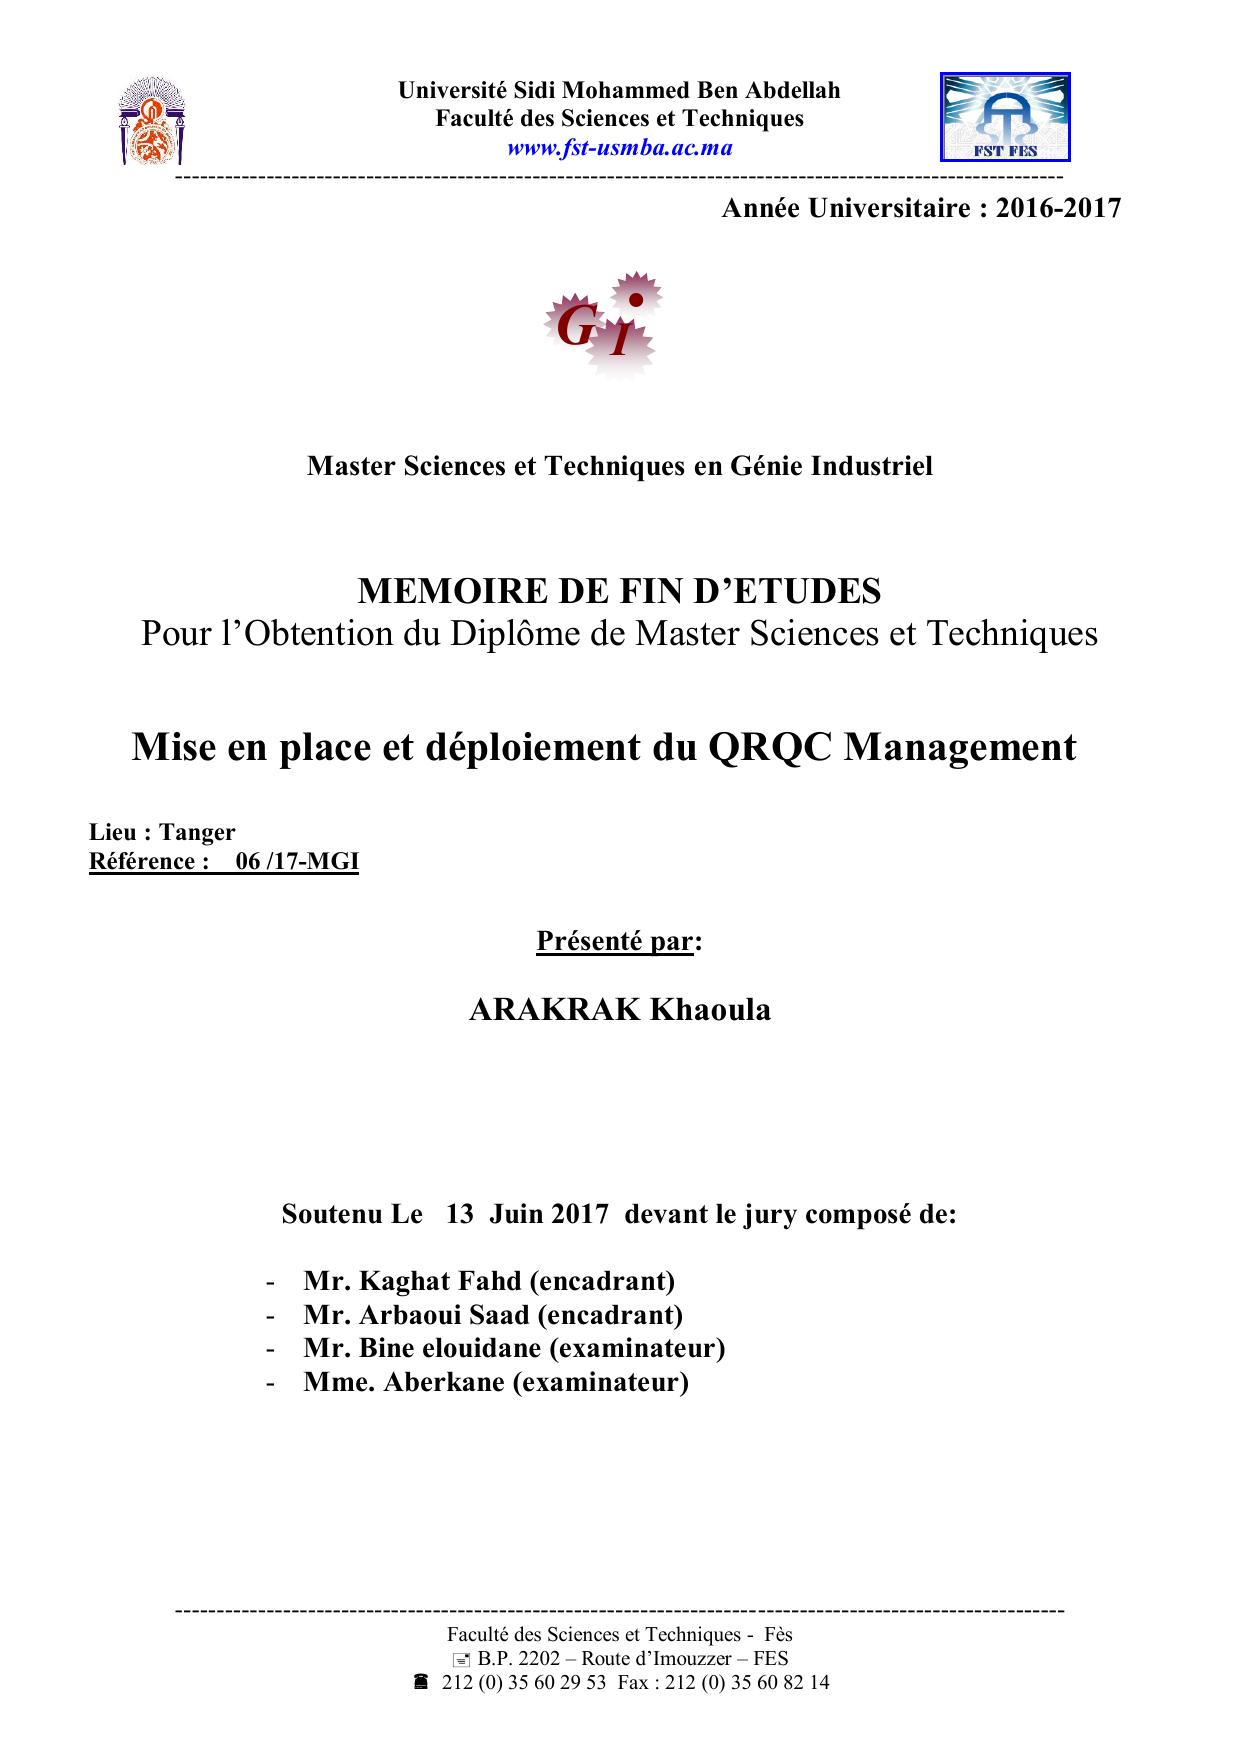 Mise en place et déploiement du QRQC Management